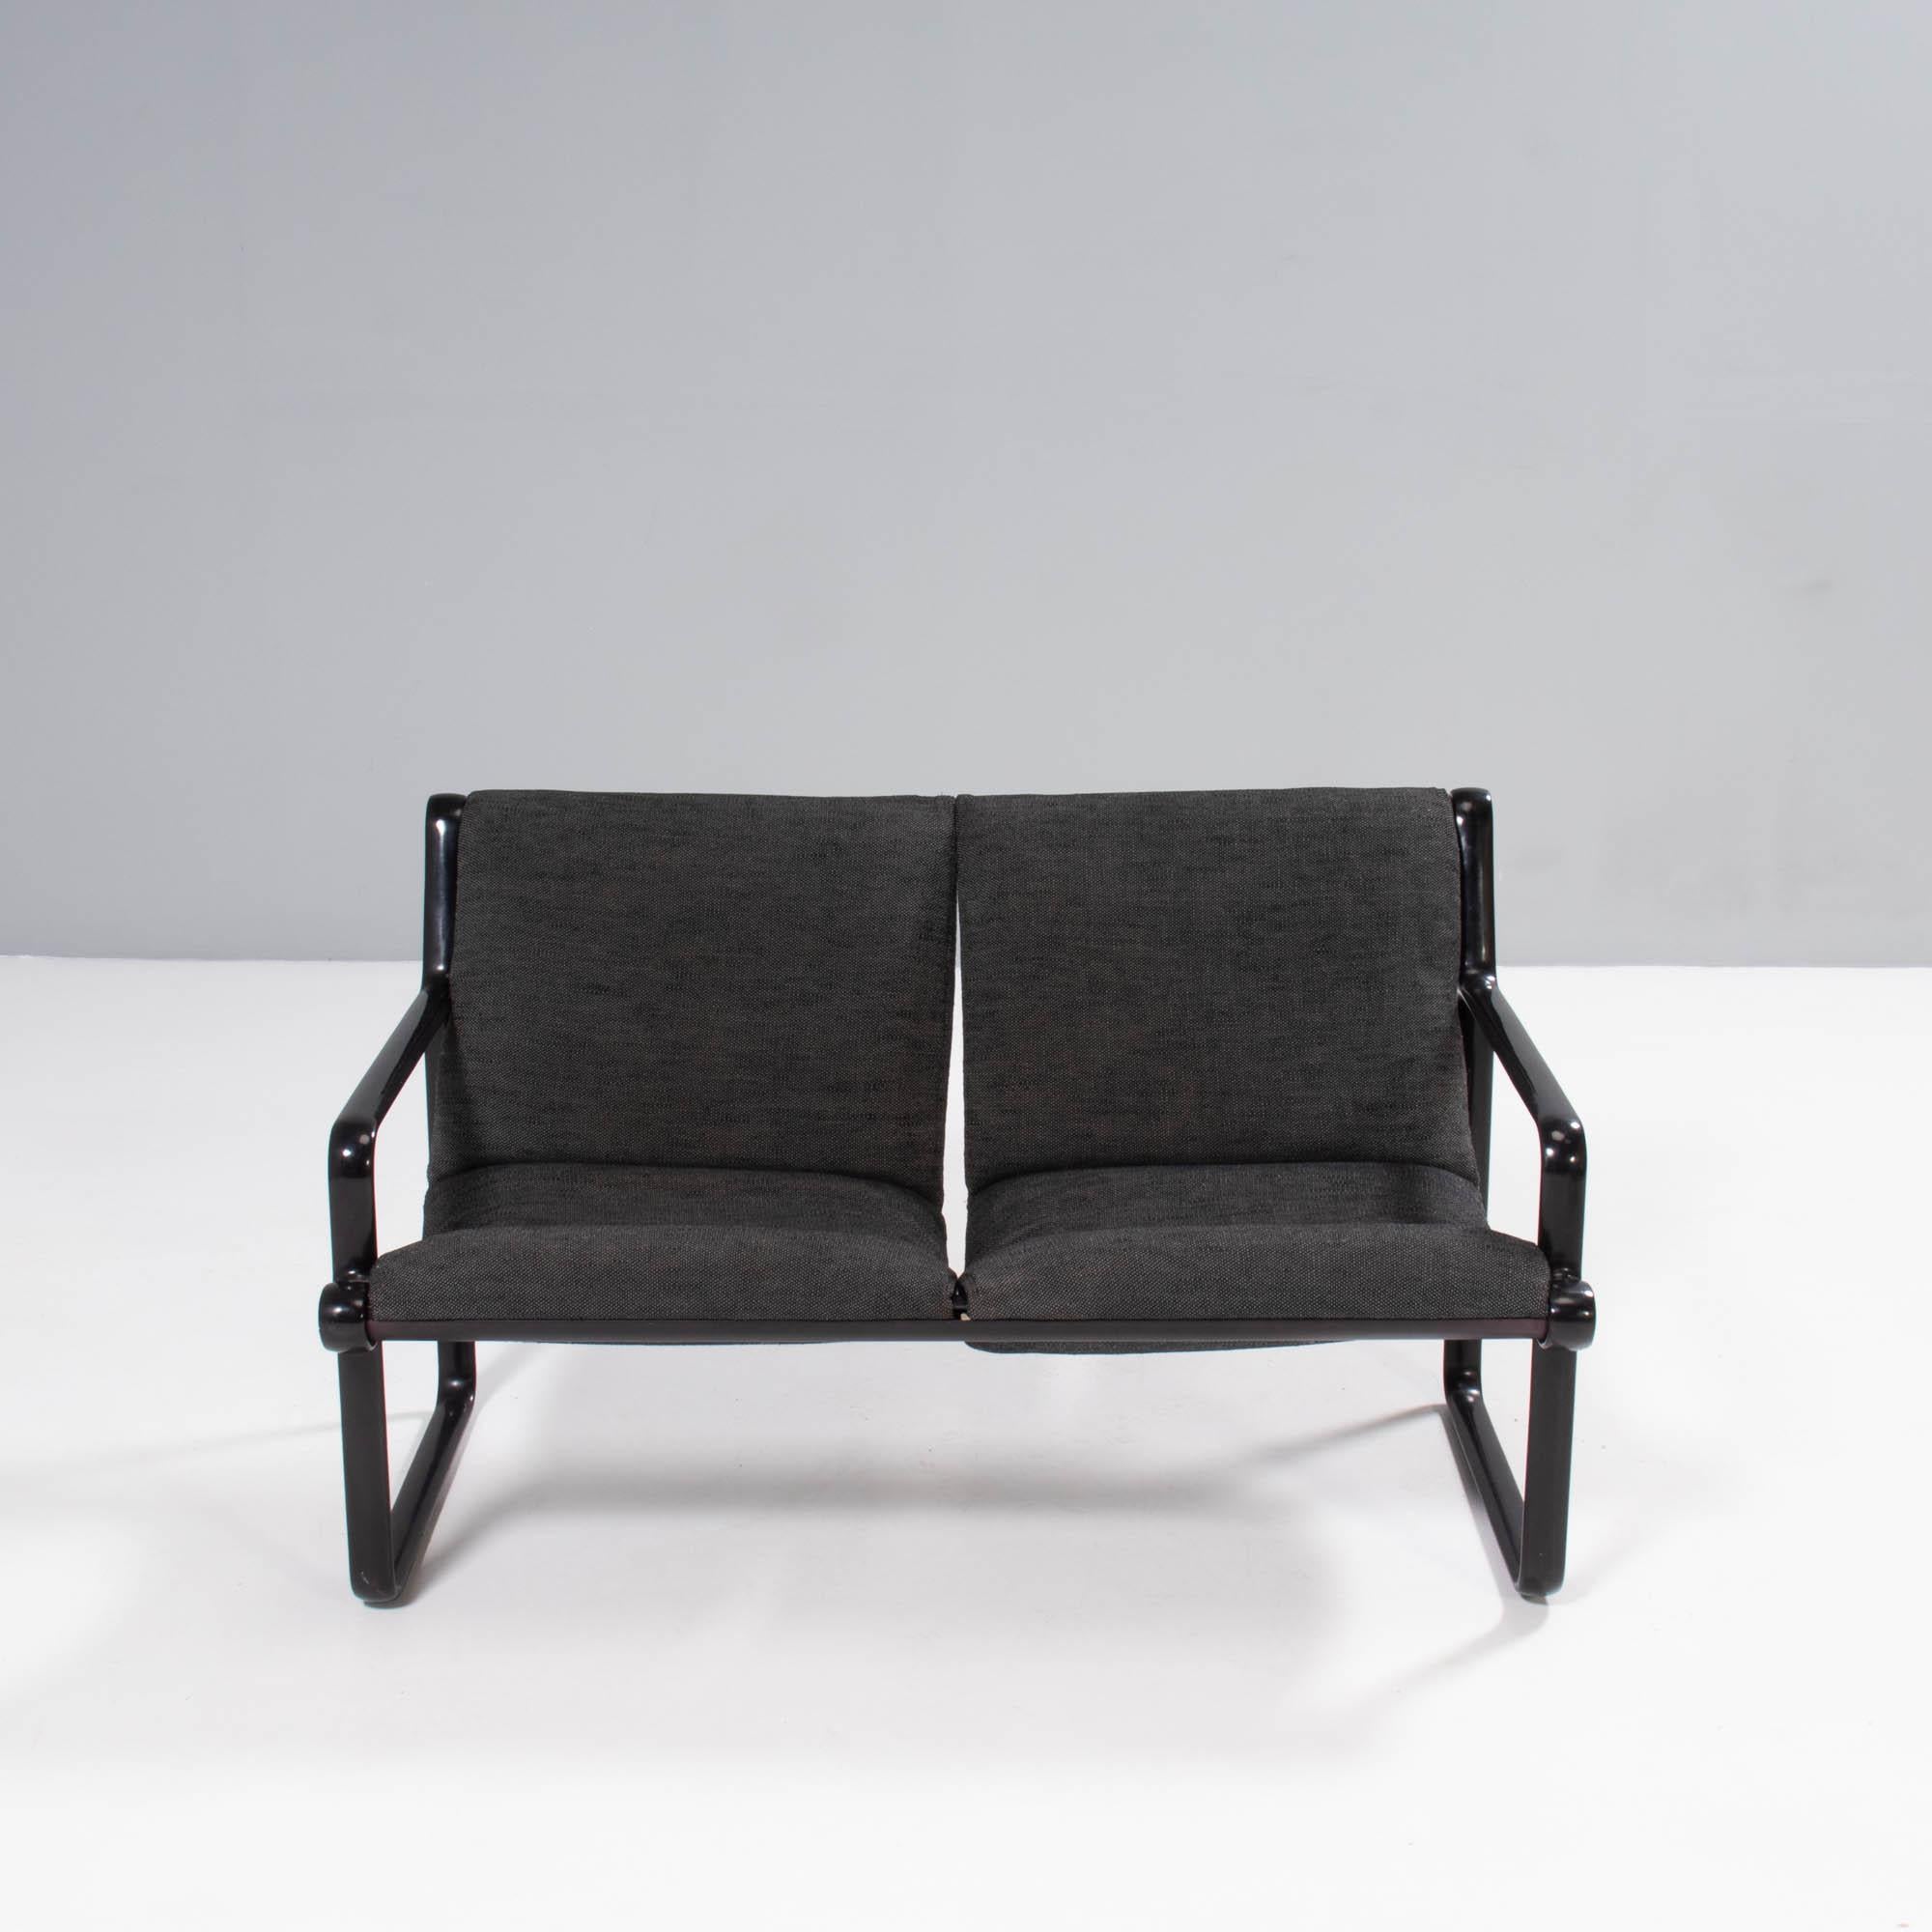 Dieses von Bruce Hannah und Andrew Ivar Morrison für Knoll entworfene Sling-Sofa ist ein fantastisches Beispiel für das Design der 1970er Jahre.

Das von Segelbooten inspirierte Sling-Sofa verfügt über einen Metallrahmen im industriellen Stil mit